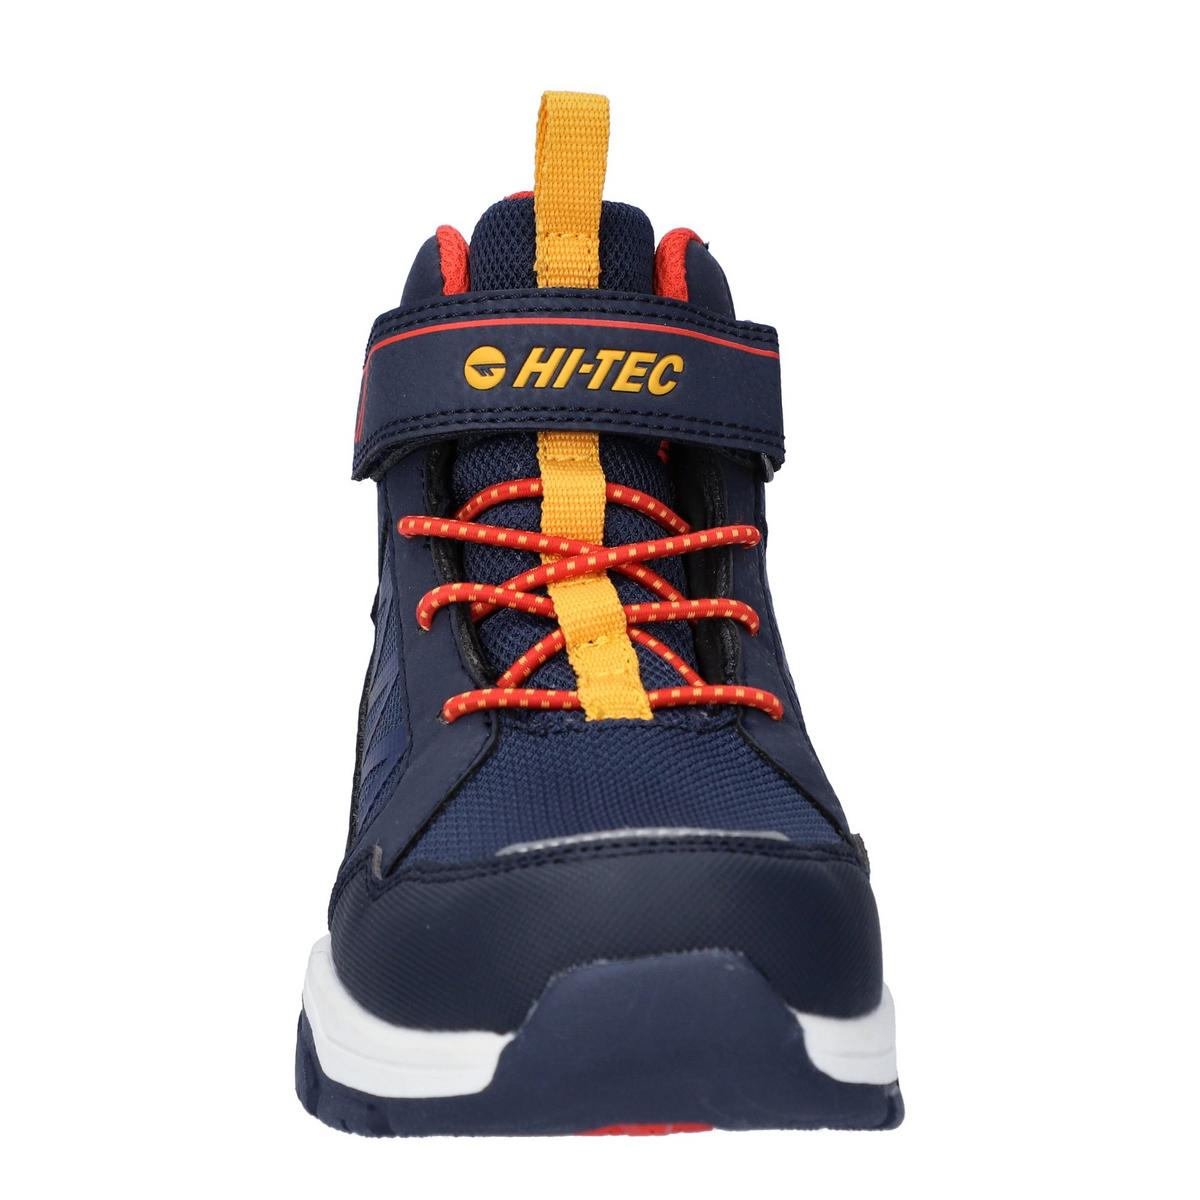 Hi-tec Kids K Rush Waterproof Boots - Navy/Orange